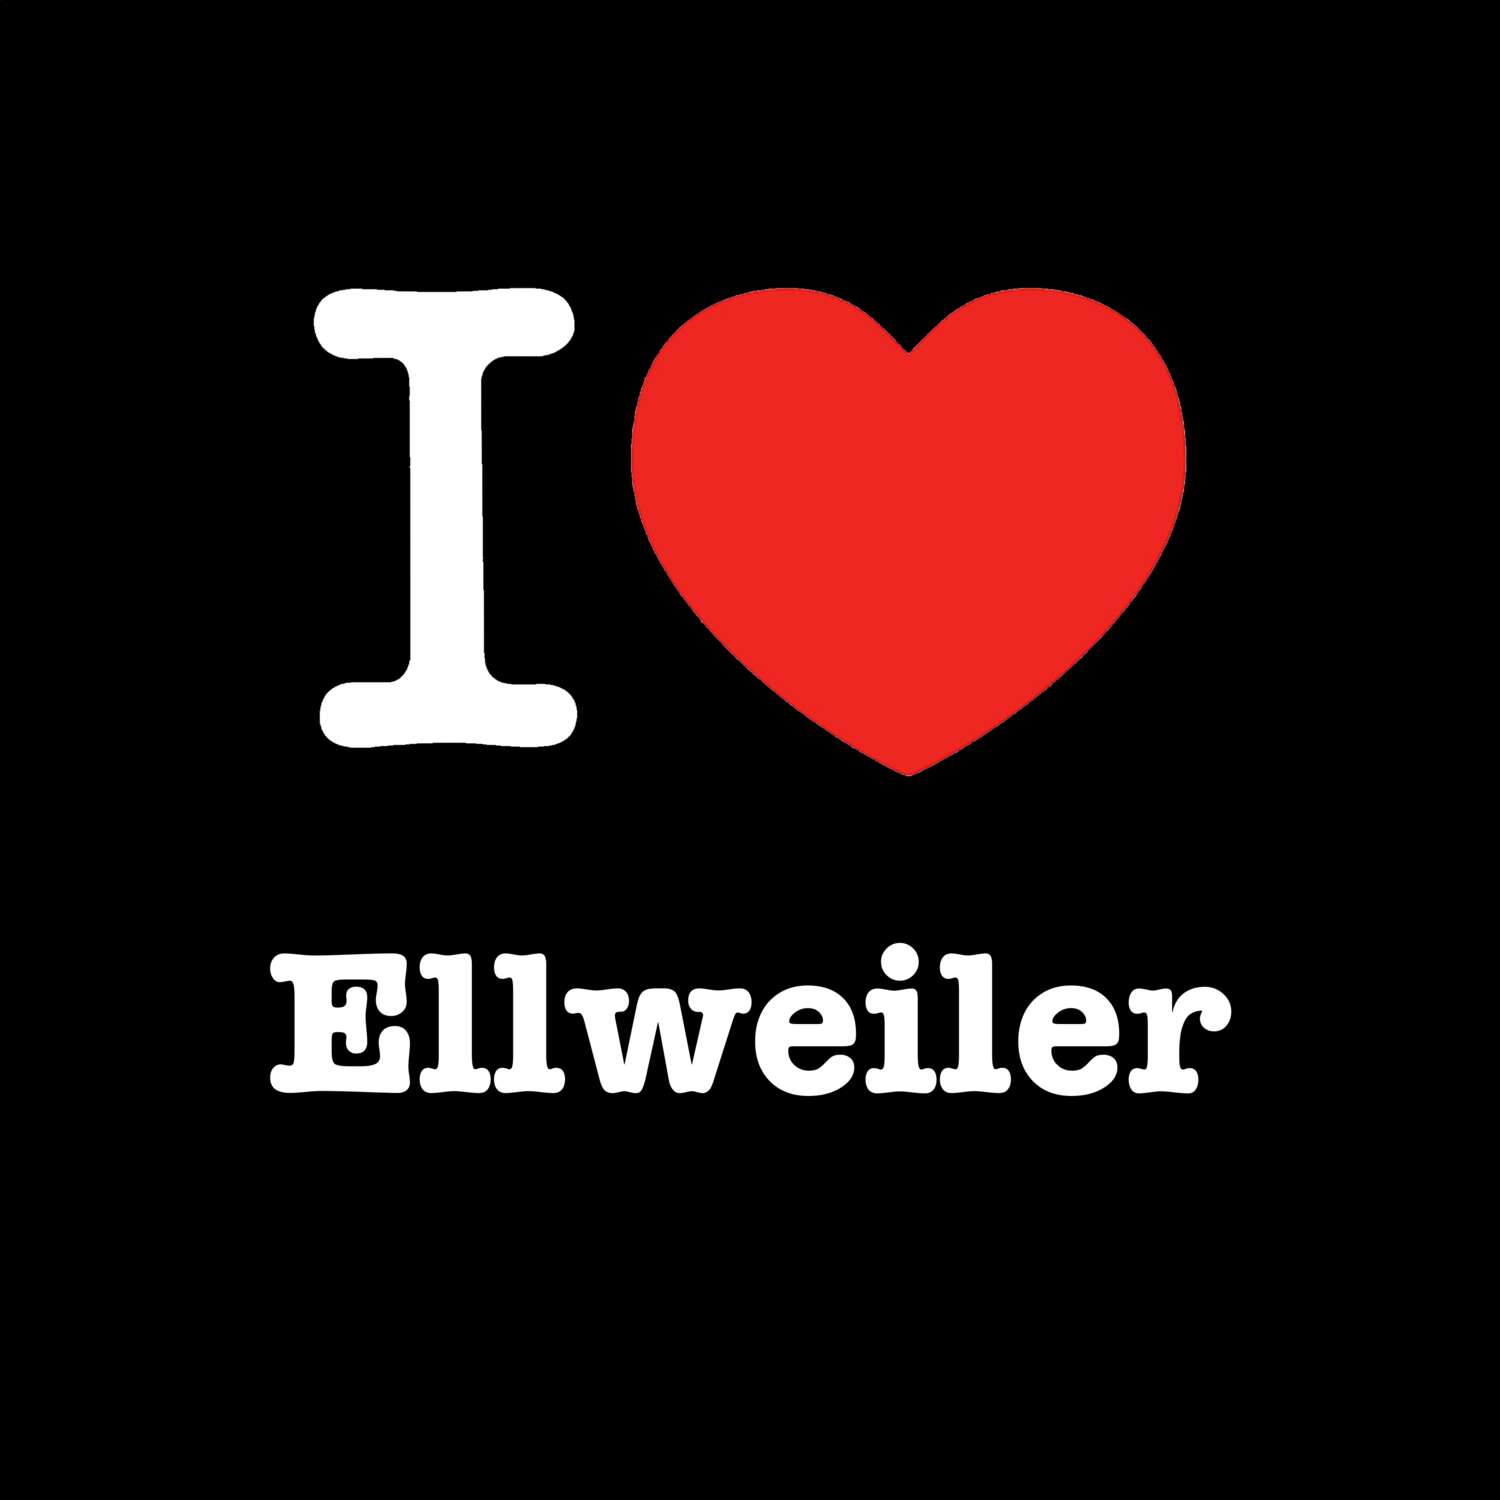 Ellweiler T-Shirt »I love«